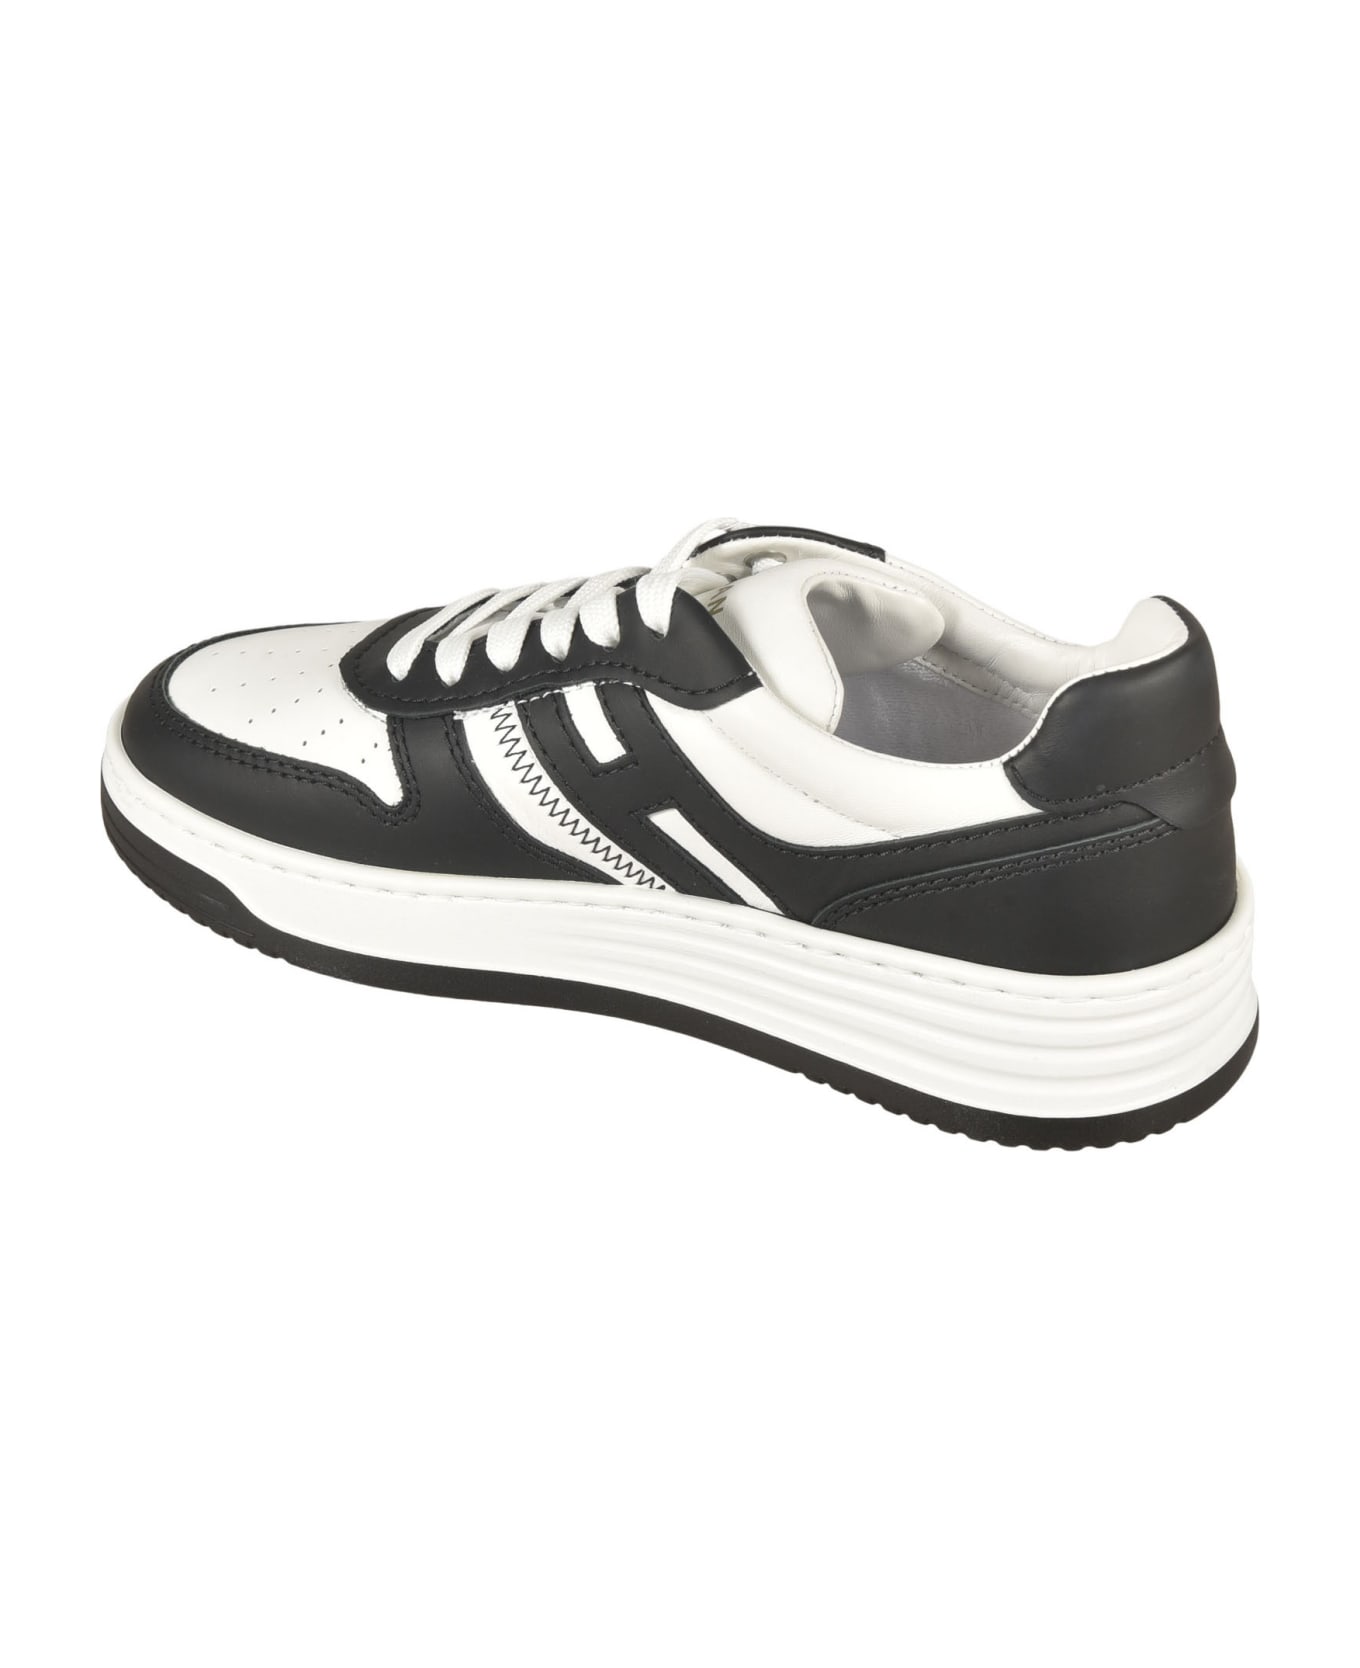 Hogan H630 Sneakers - White/Black スニーカー